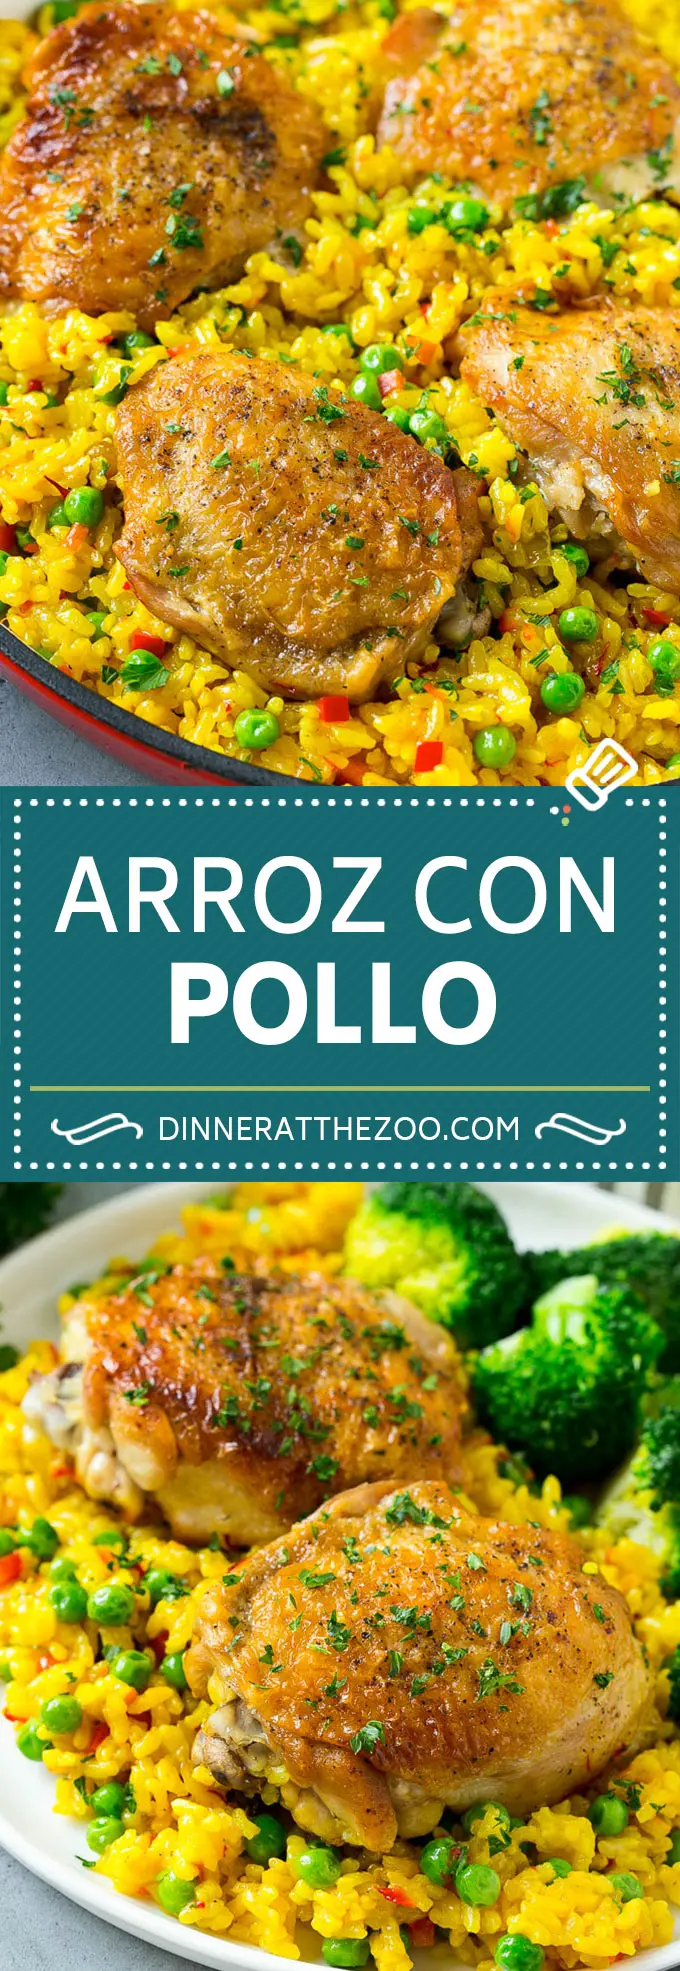 Receta de Arroz con Pollo | Pollo y Arroz | Pollo español #pollo #arroz #onepot #cena #cenaenelzoo #singluten